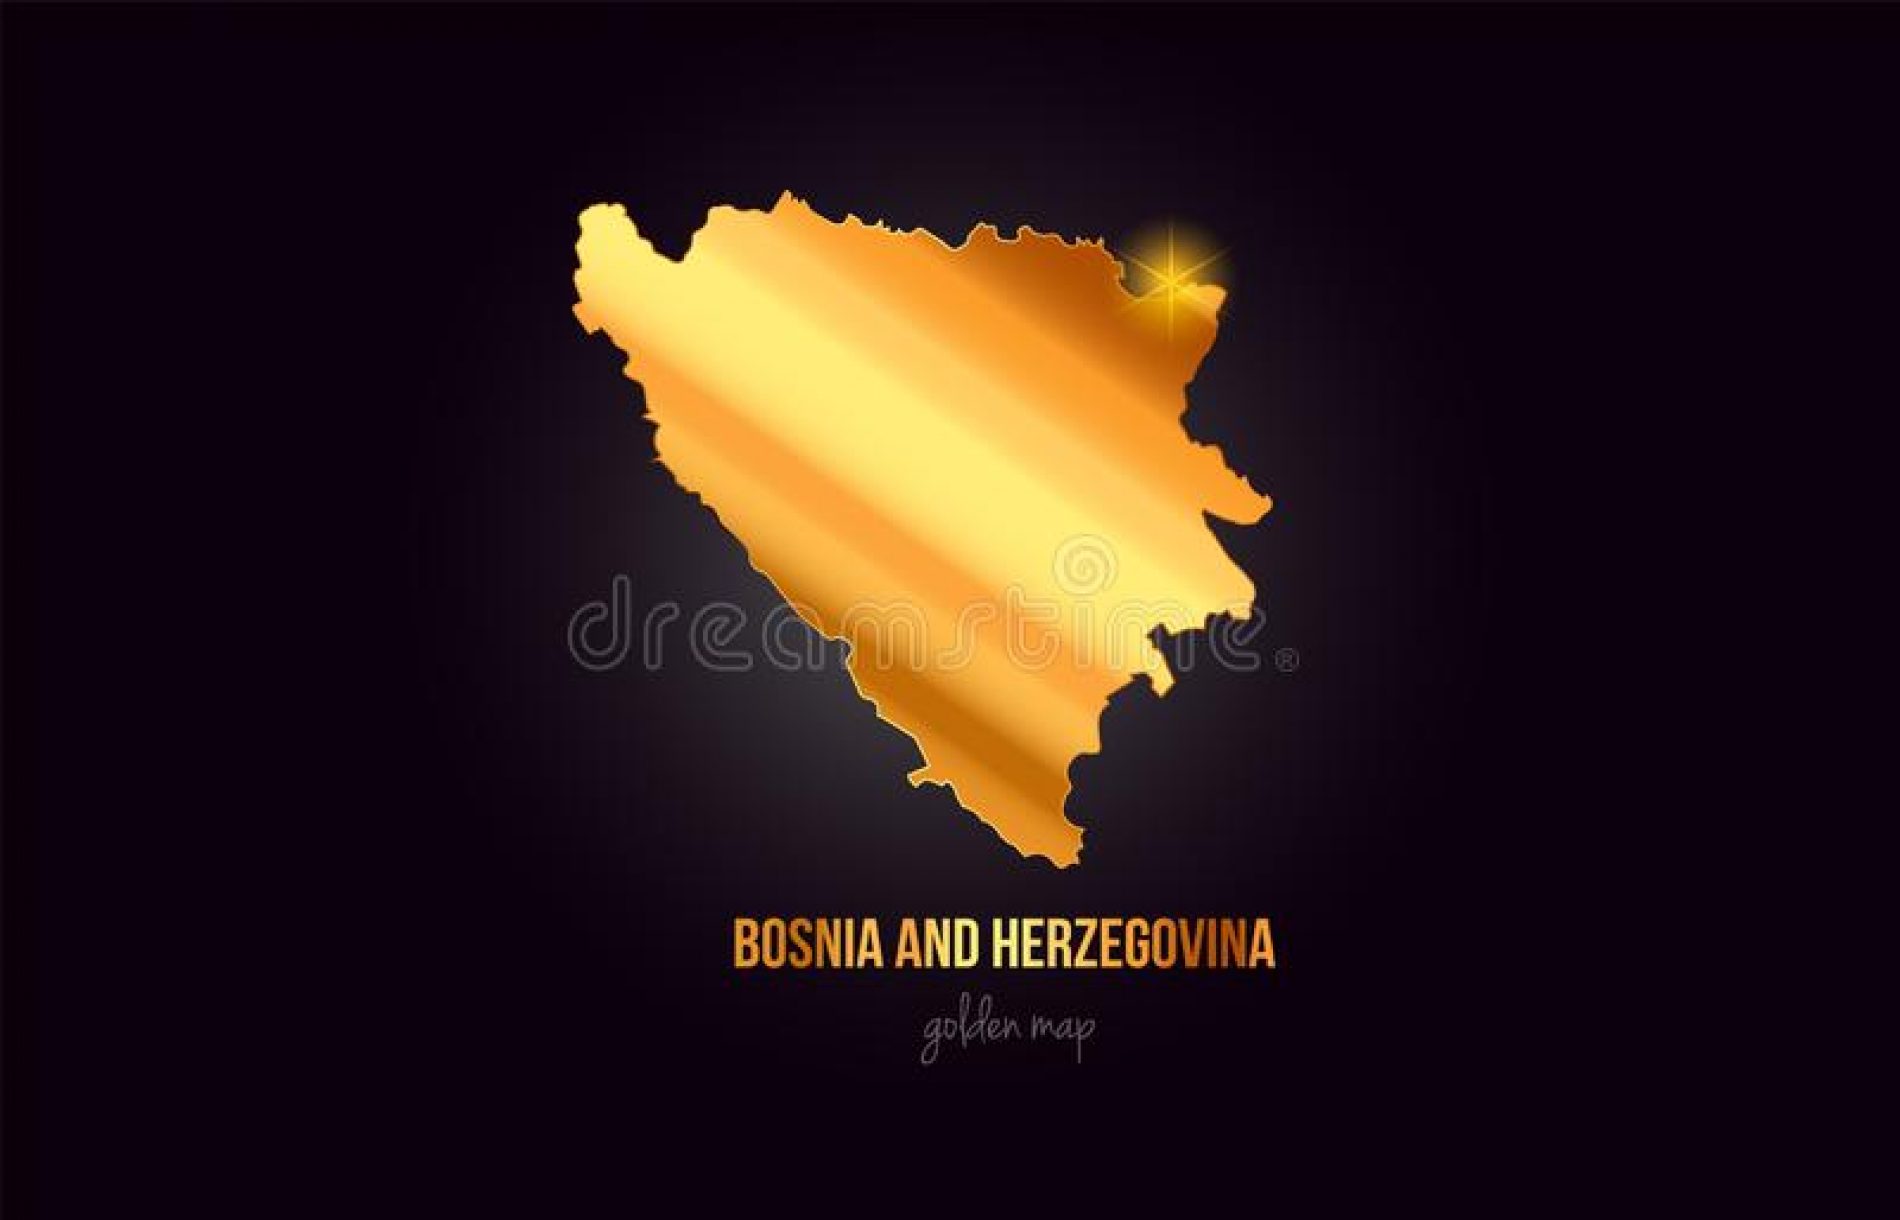 Stubovi bosanske ekonomije! Konstantan rast metalskog i drvnog sektora